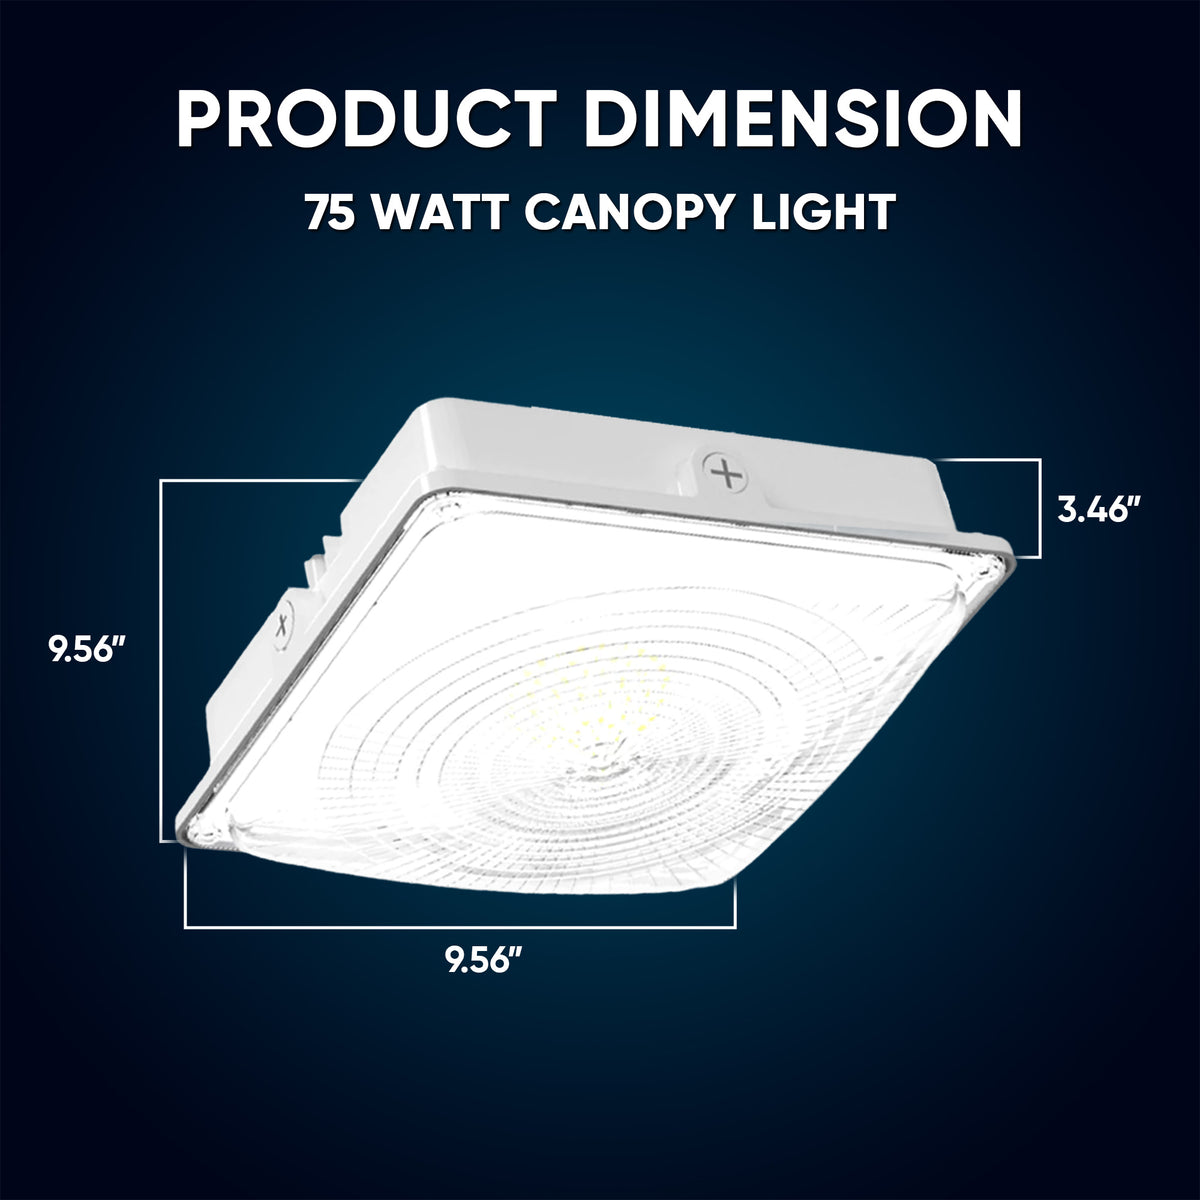 LED Canopy Light 75W 5700K Daylight 9750LM IP65 Waterproof 0-10V Dim 1 –